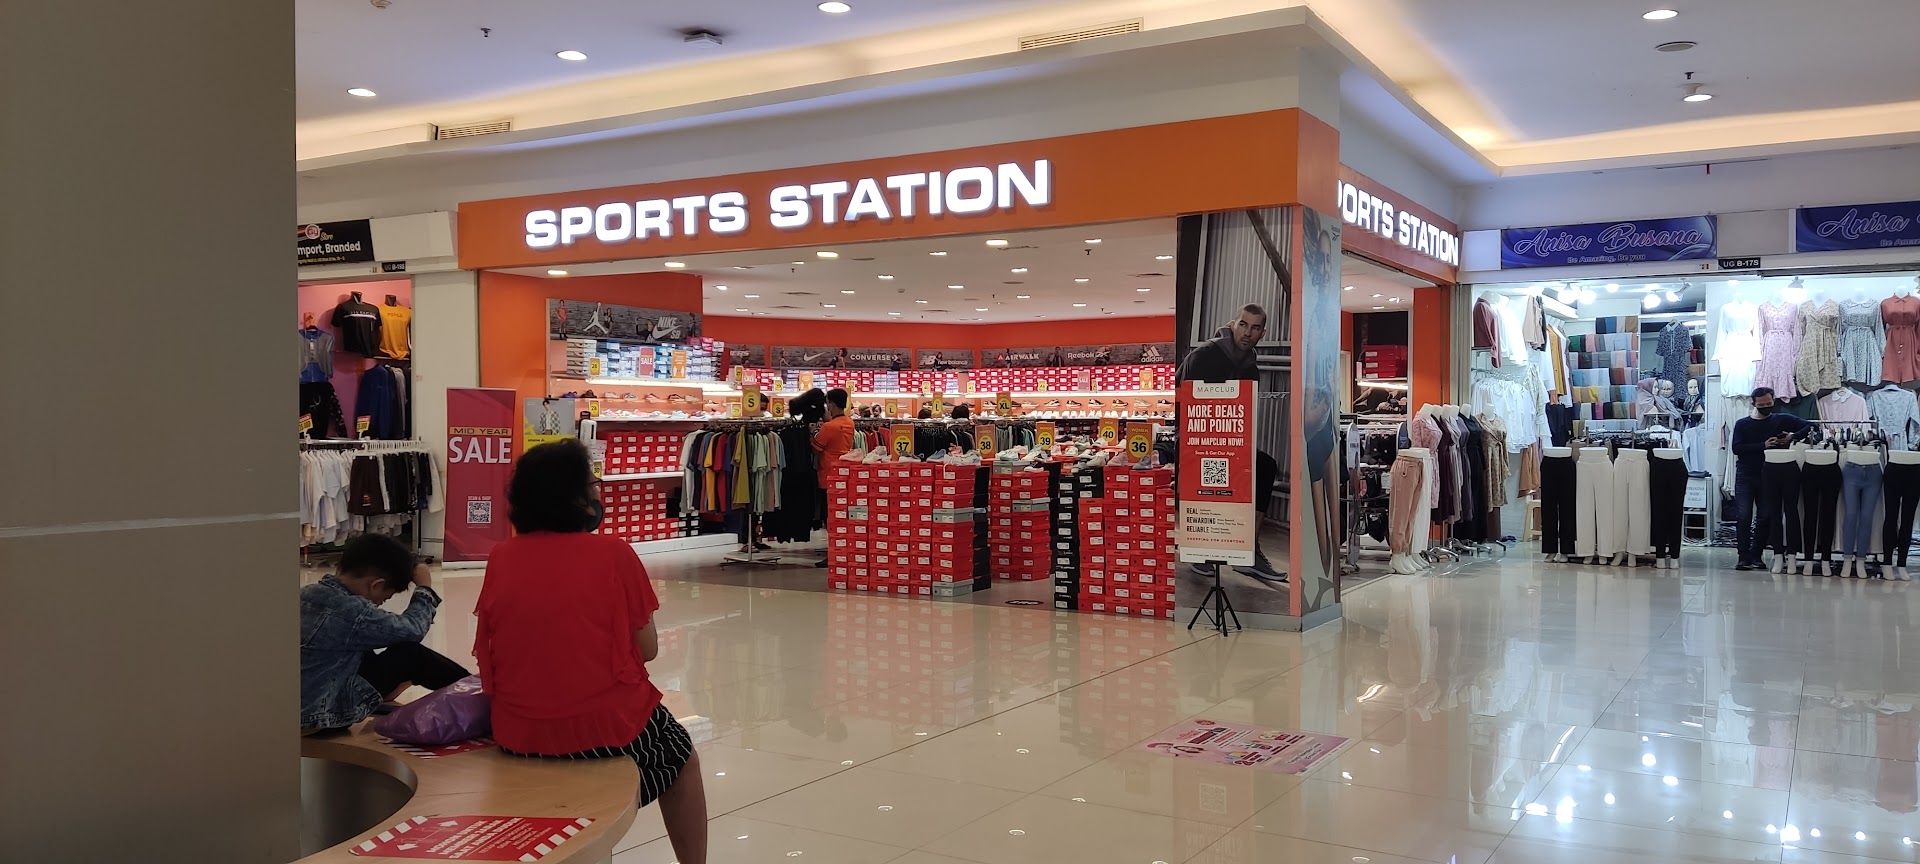 Gambar Sports Station Tangerang City Mall